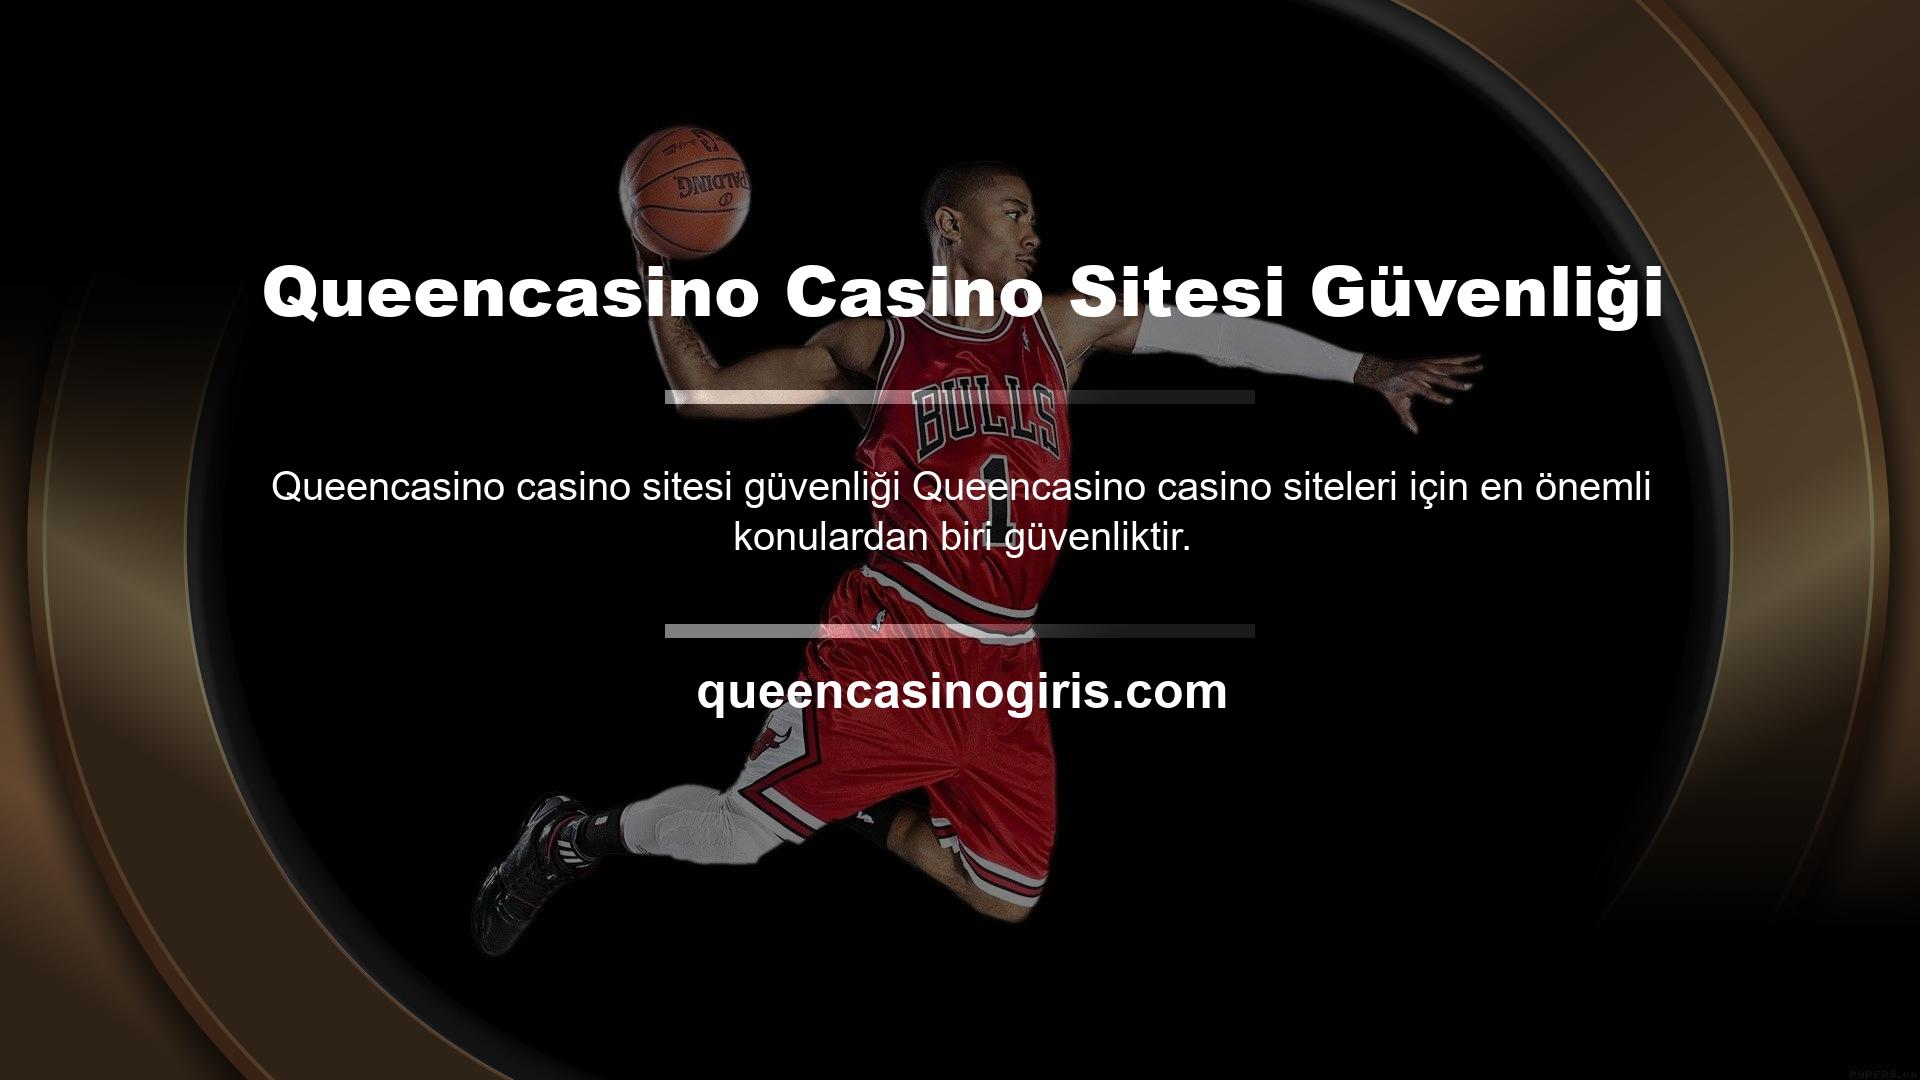 Queencasino Casino Sitesi Güvenliği